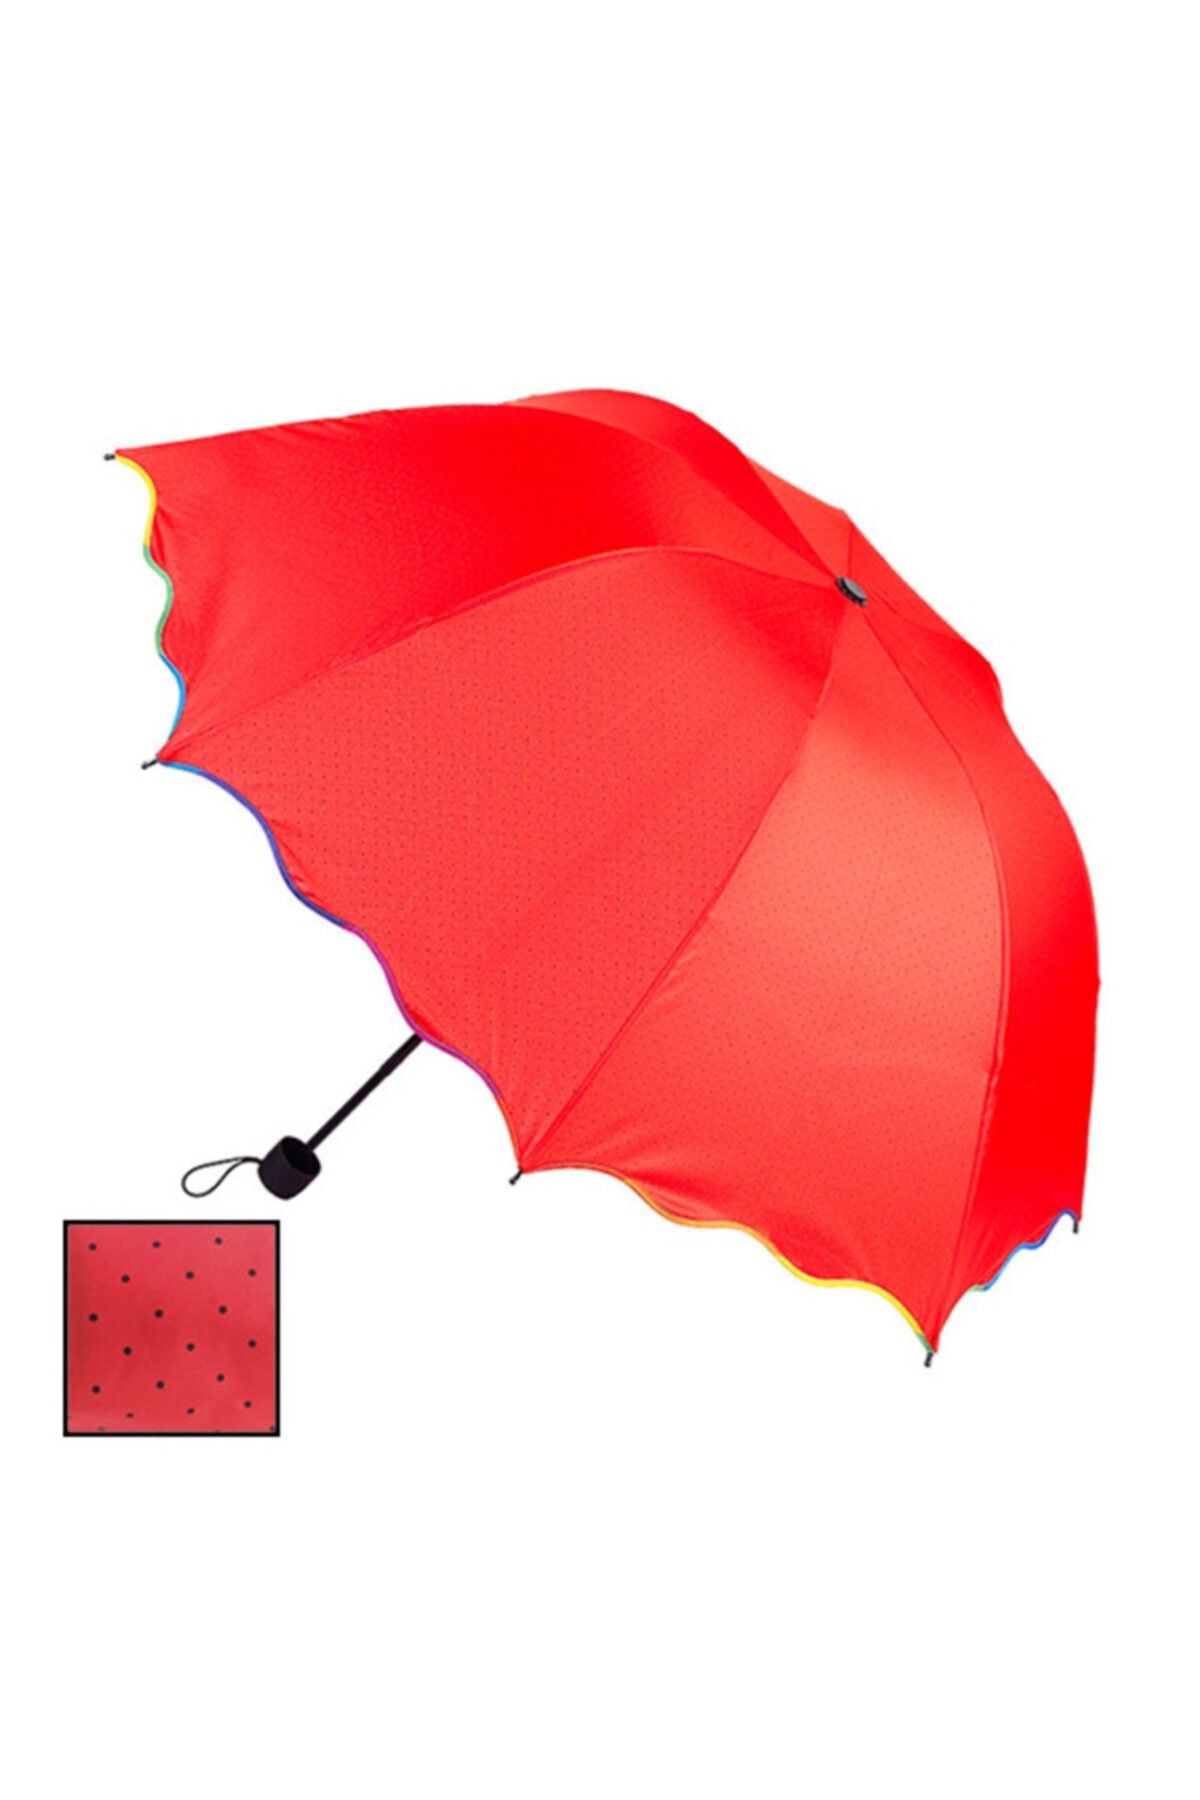 Rubenis Rb-065k Kırmızı Bayan Şemsiyesi